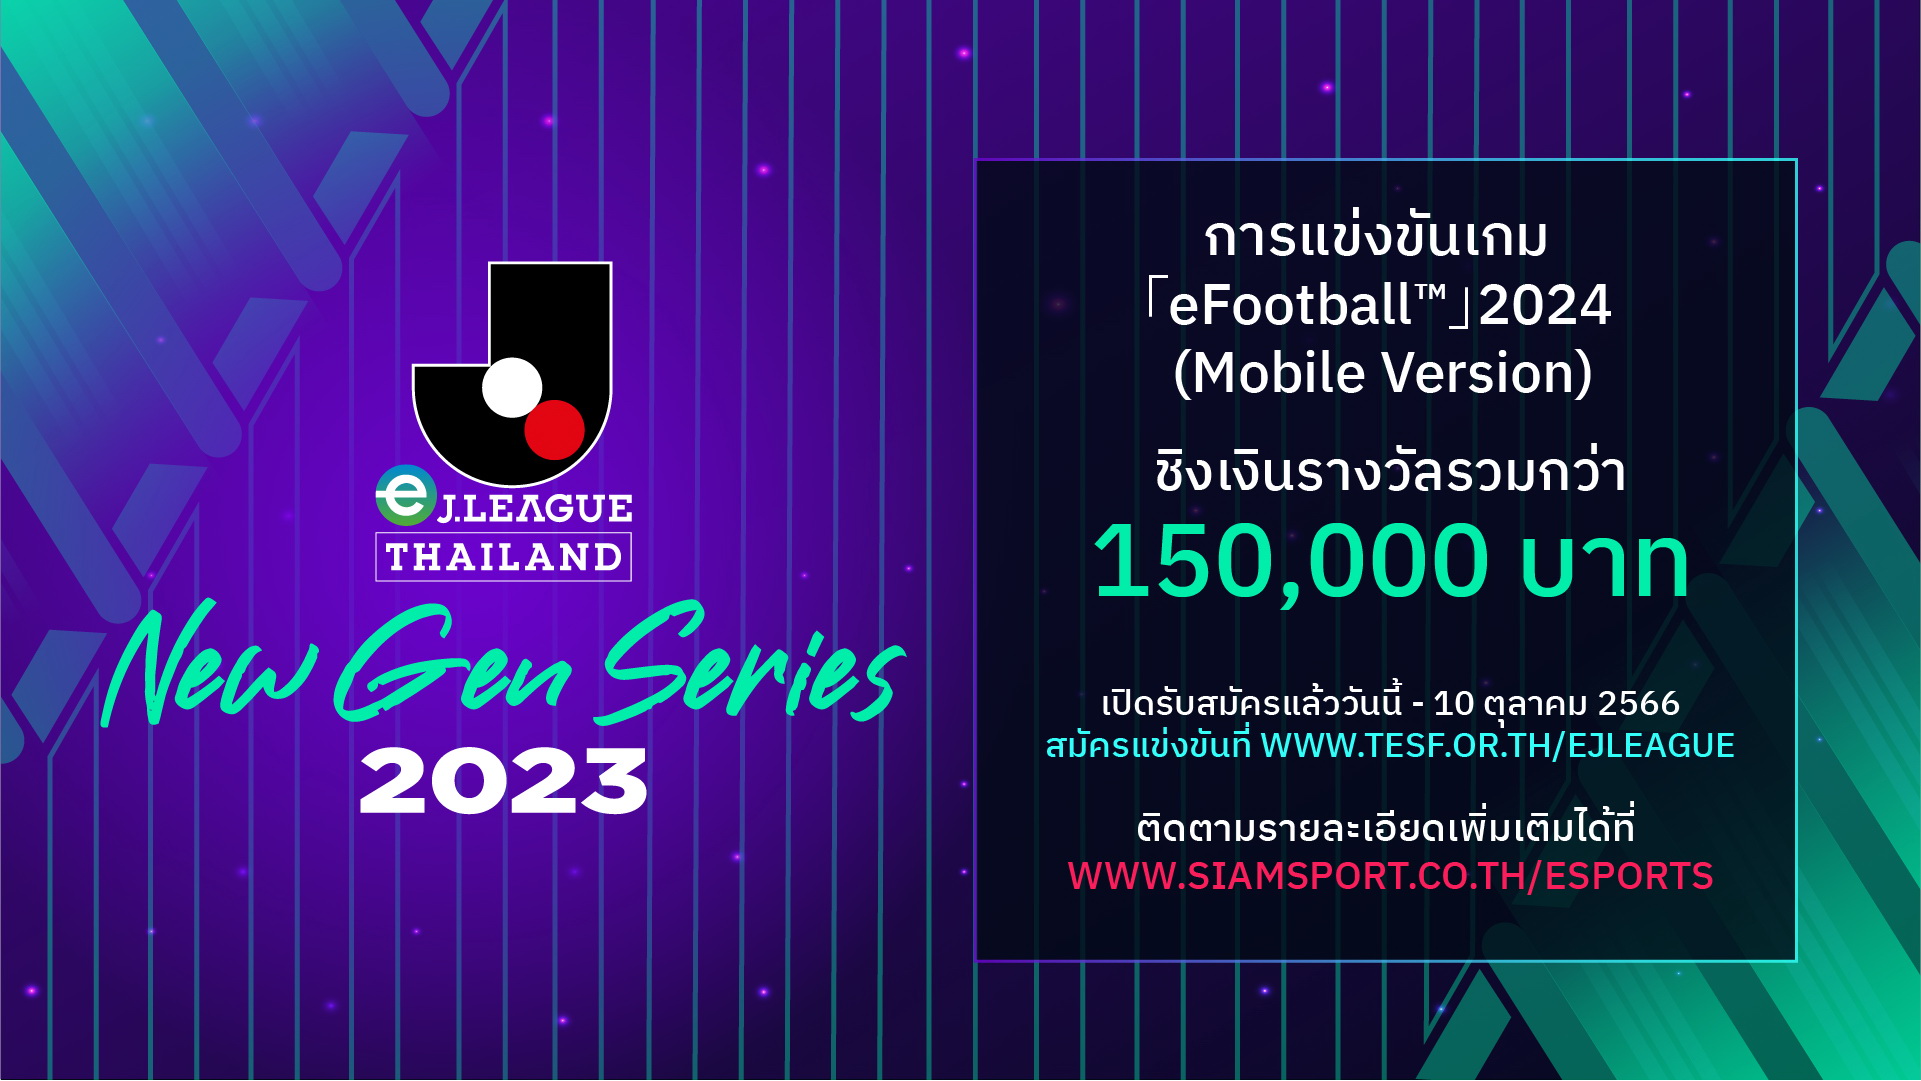 เปิดรับสมัครแล้ว! eJ.LEAGUE THAILAND NEW GEN SERIES 2023  ศึกชิงเจ้าสังเวียนอีสปอร์ต ปี 3 「eFootball™」2024 Mobile Version